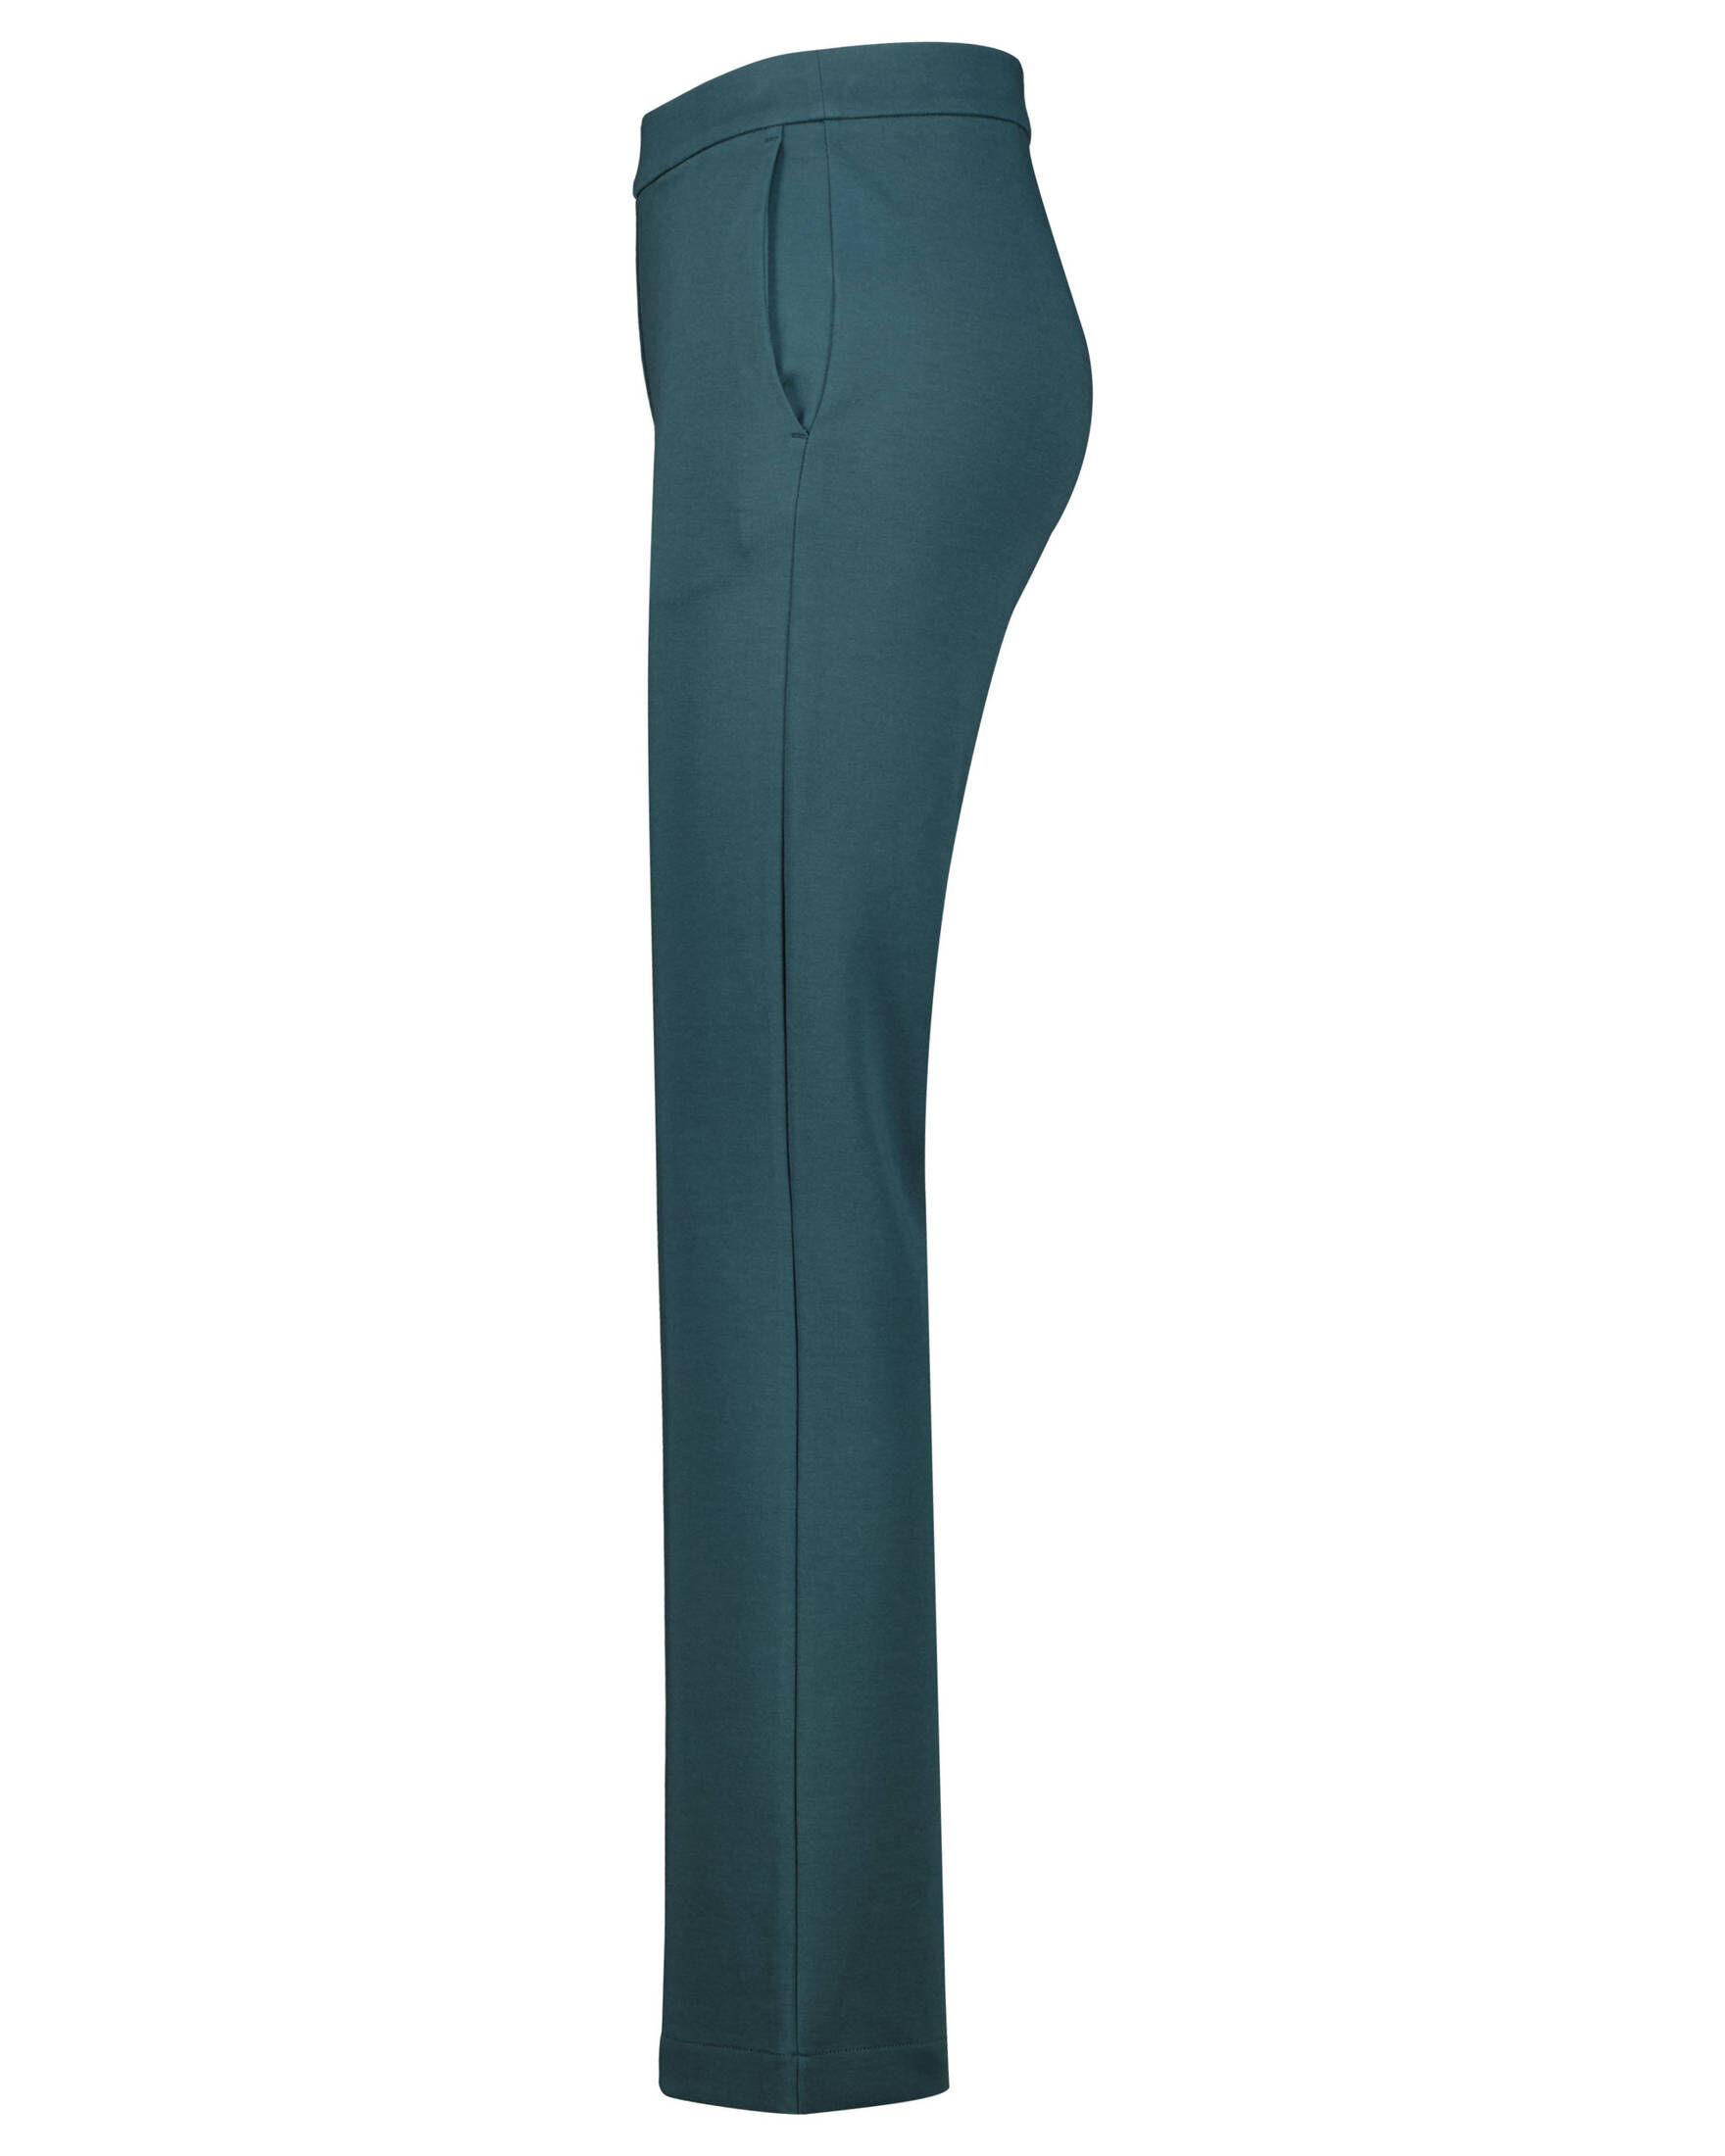 Marc O'Polo Damen Jerseyhose mit geschlitzem Saum kaufen | engelhorn